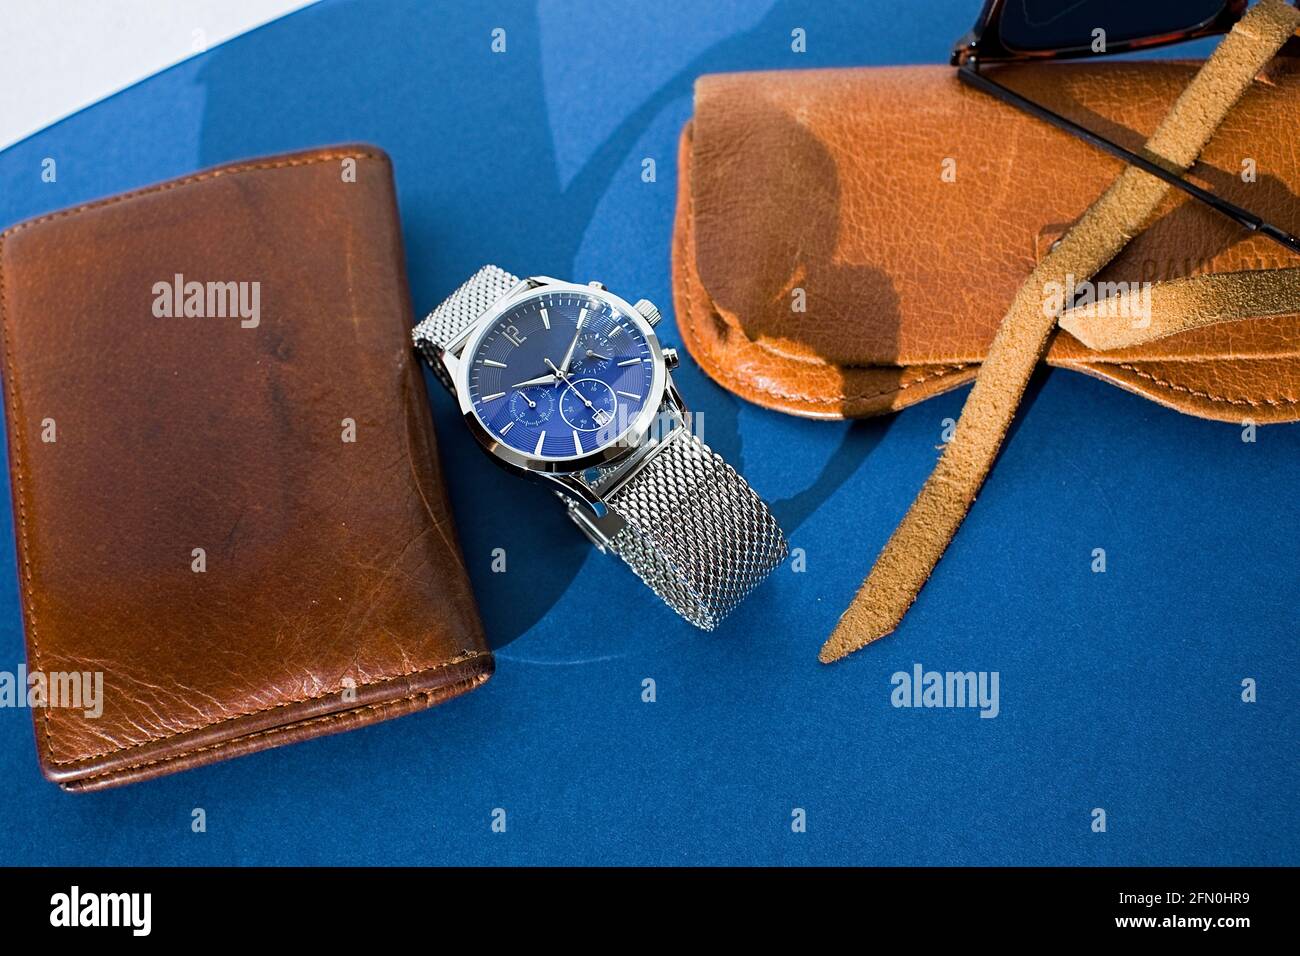 Ledertasche, Uhr mit Metallarmband, Sonnenbrille und Laptop auf blauem Hintergrund. Accessoires für Herren. Draufsicht Stockfoto